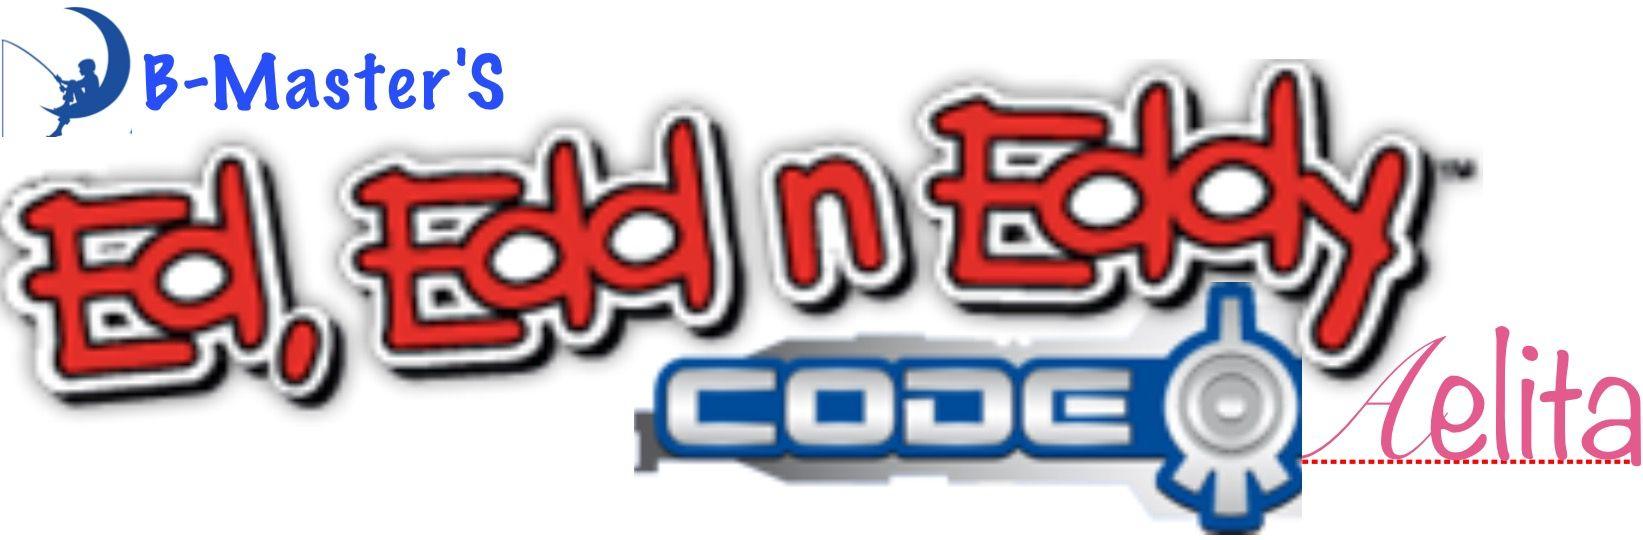 Ed Edd N Eddy Logo - Image - Code Aelita logo.jpg | Ed, Edd n Eddy Fanon Wiki | FANDOM ...